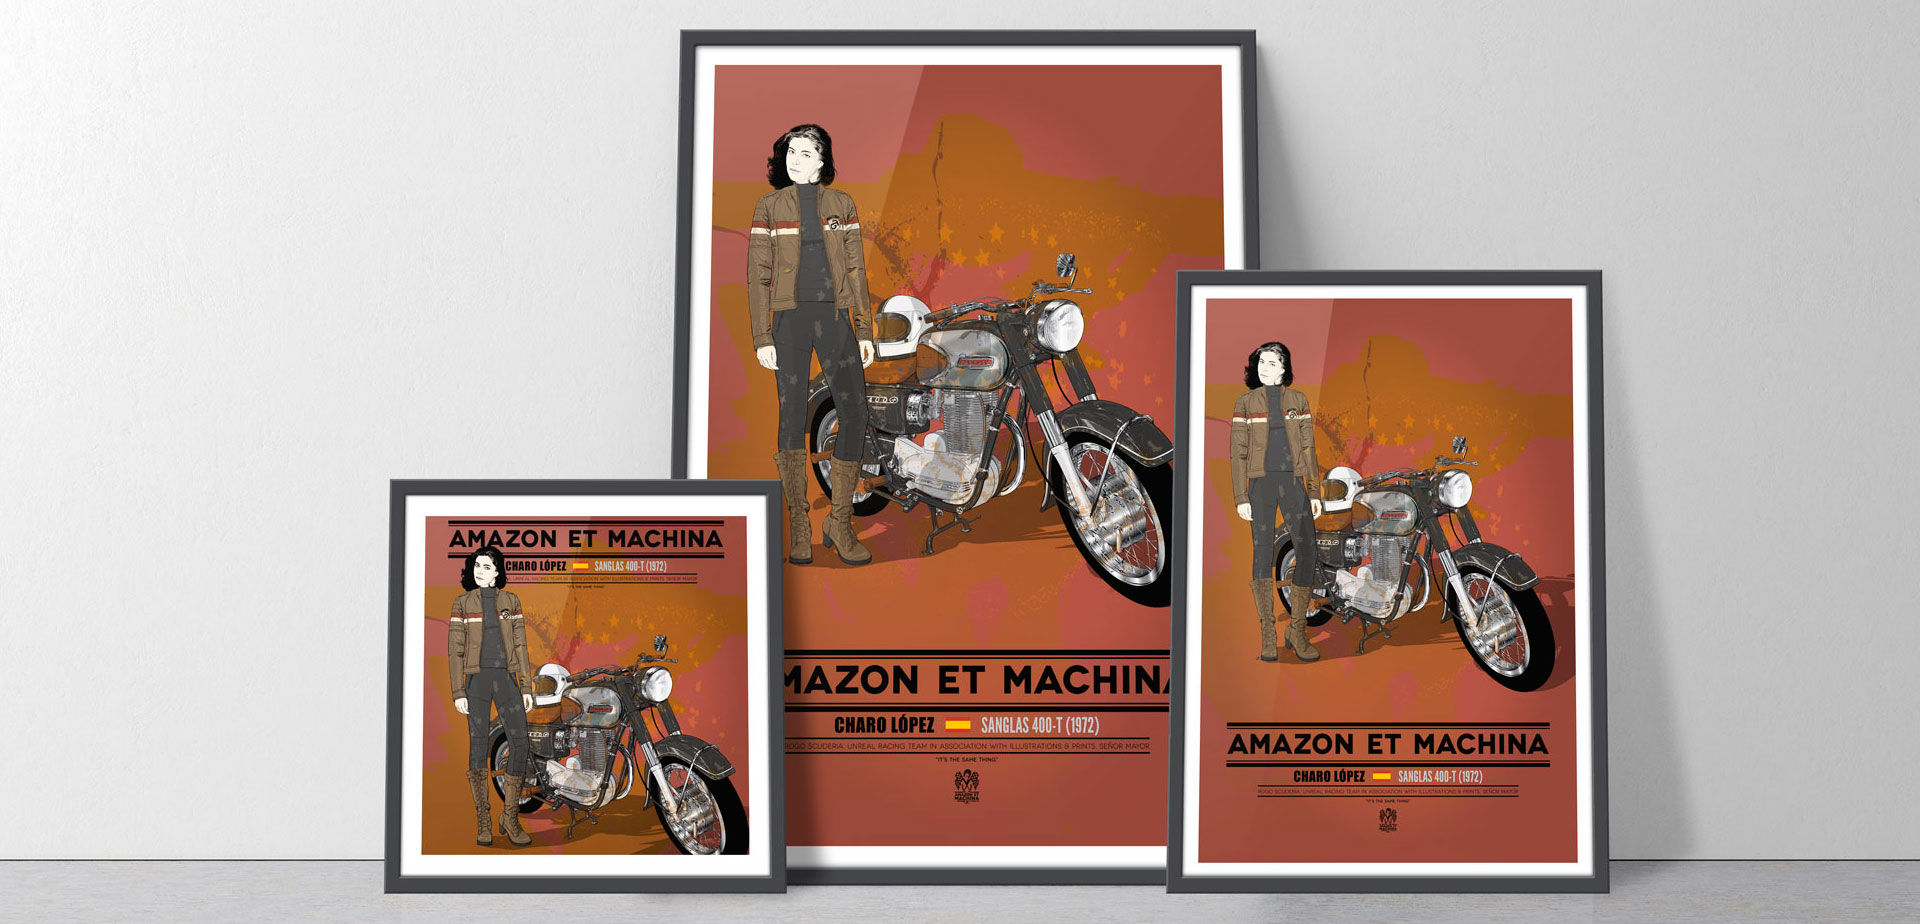 Charo López y su Sanglas 400-T. posters o láminas en diferentes formatos